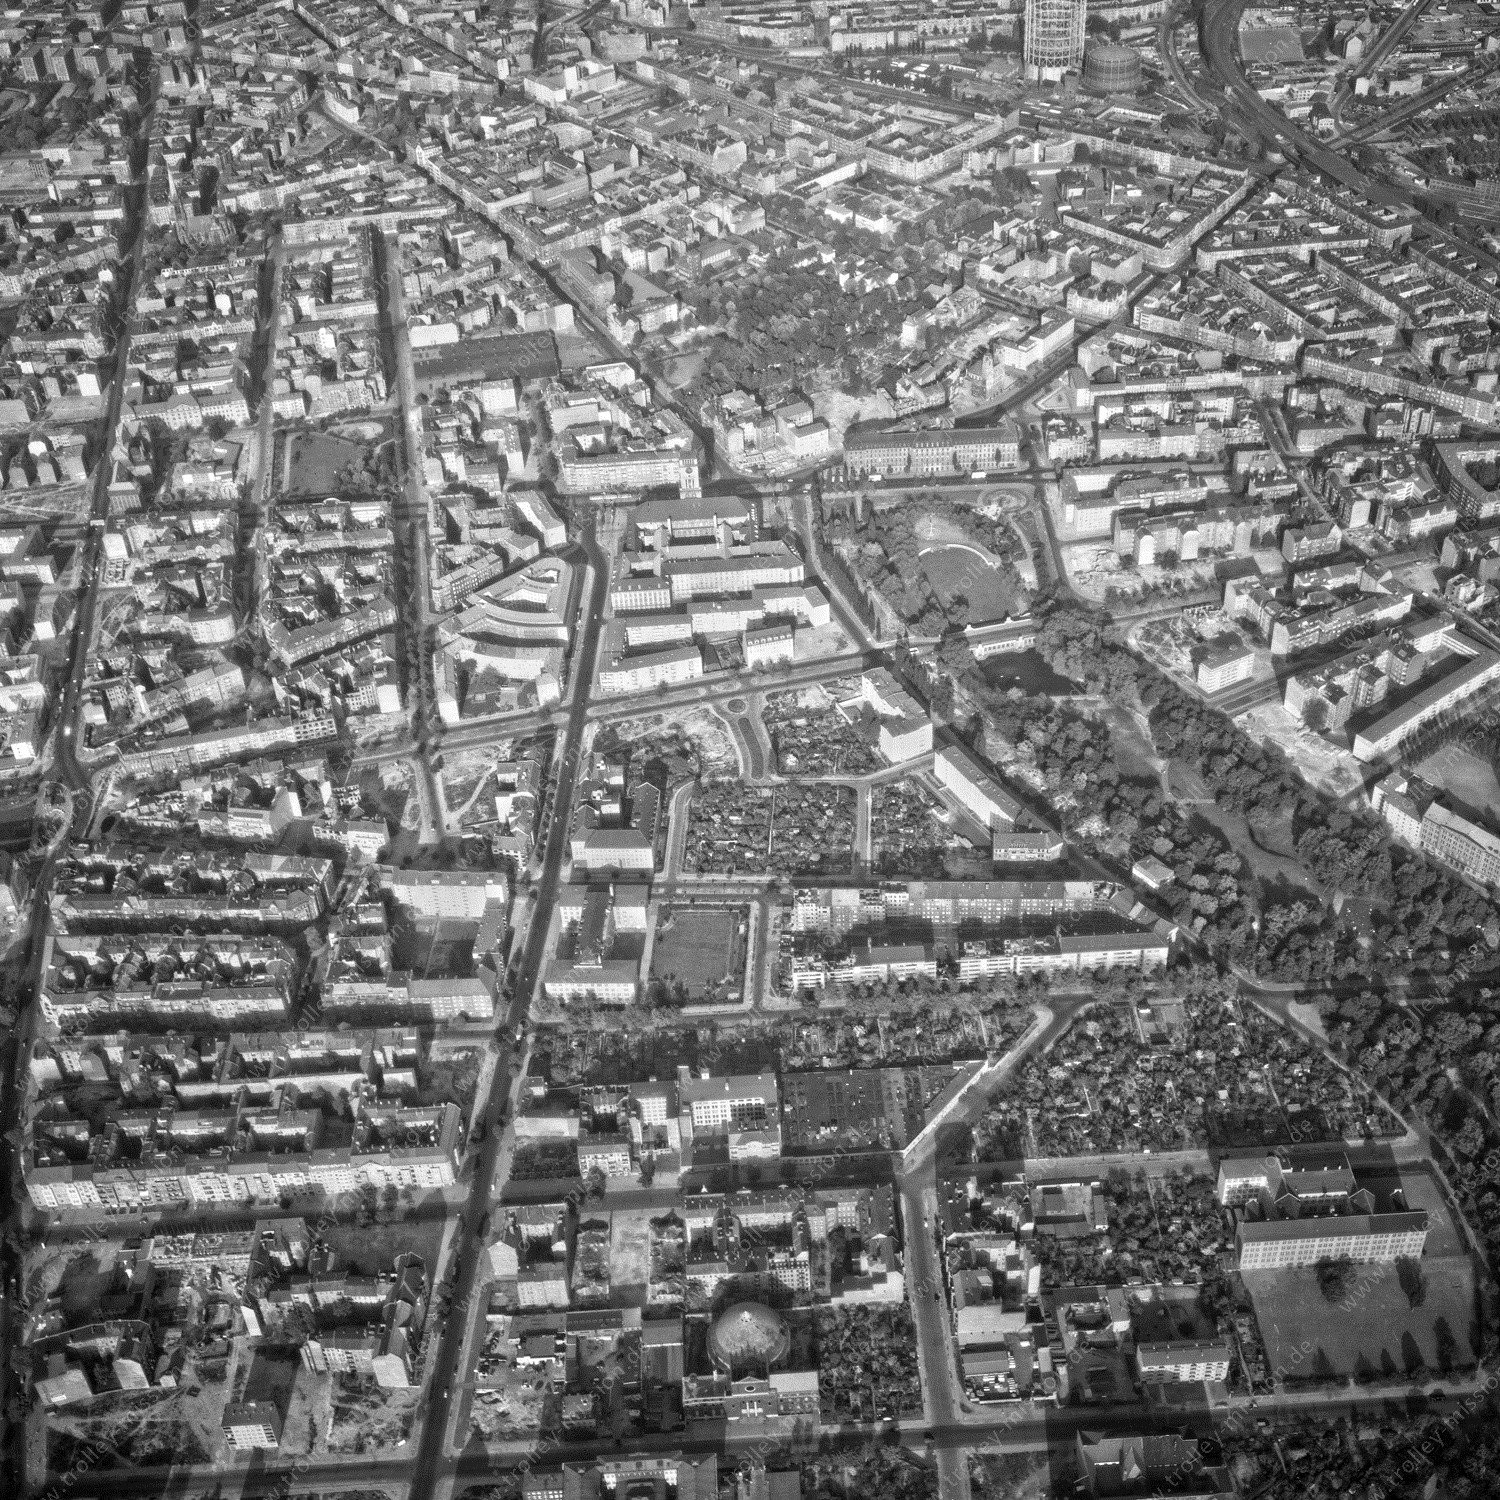 Alte Fotos und Luftbilder von Berlin - Luftbildaufnahme Nr. 02 - Historische Luftaufnahmen von West-Berlin aus dem Jahr 1954 - Flugstrecke Echo